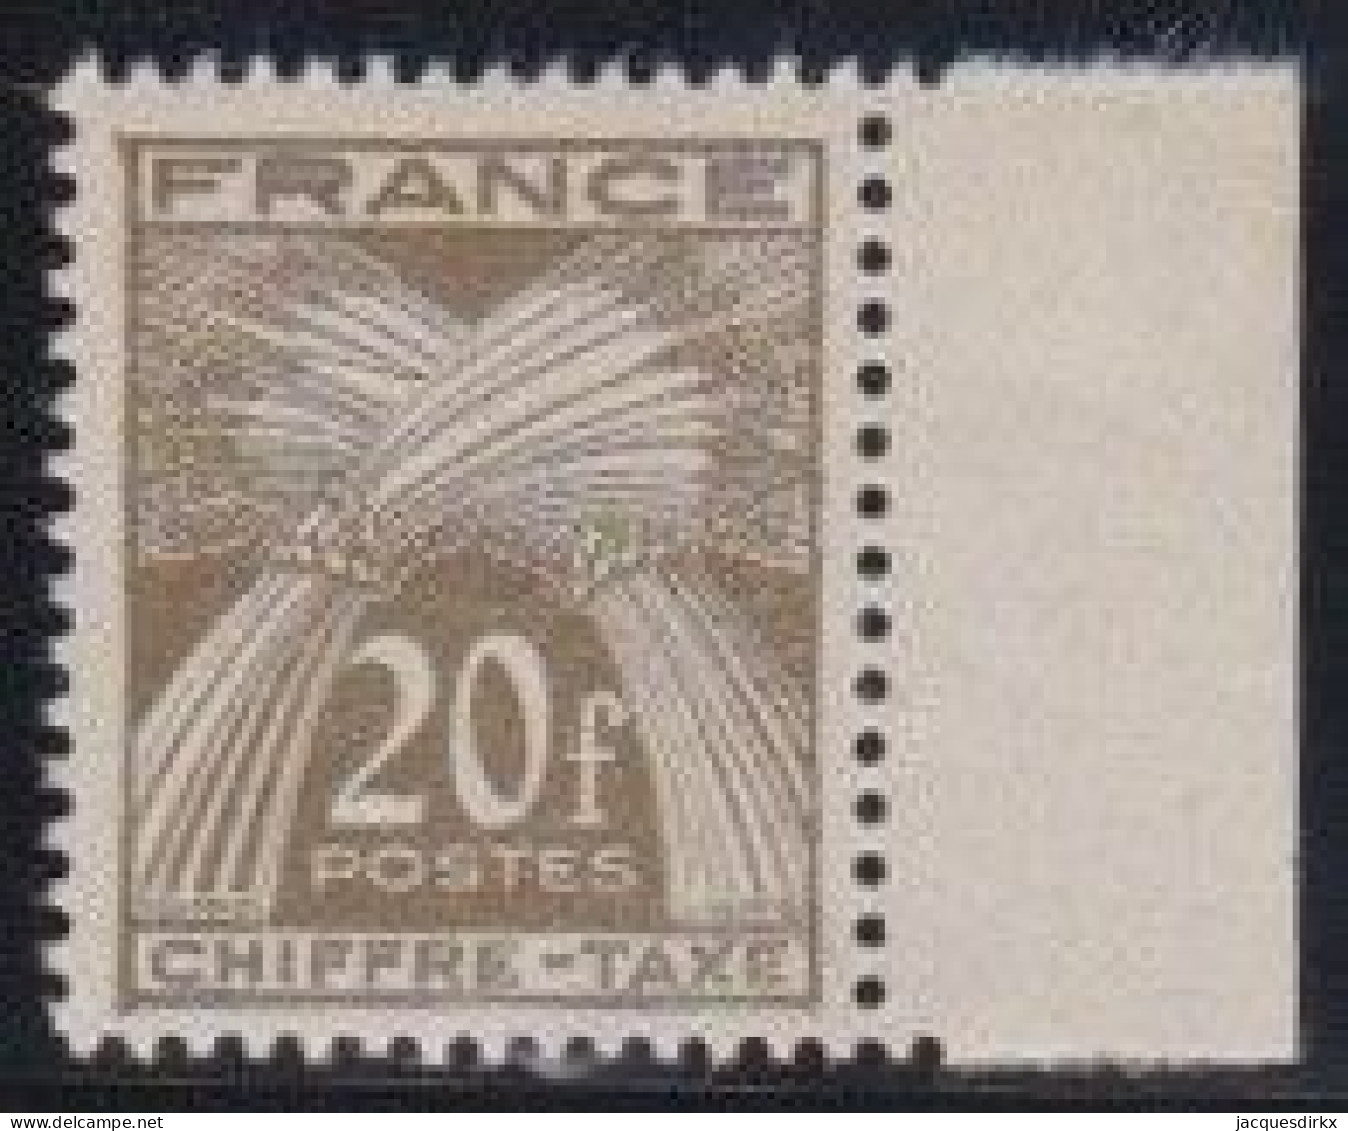 France    .  Y&T   .     Taxe 77       .   **      .    Neuf Avec Gomme Et SANS Charnière - 1859-1959 Nuevos